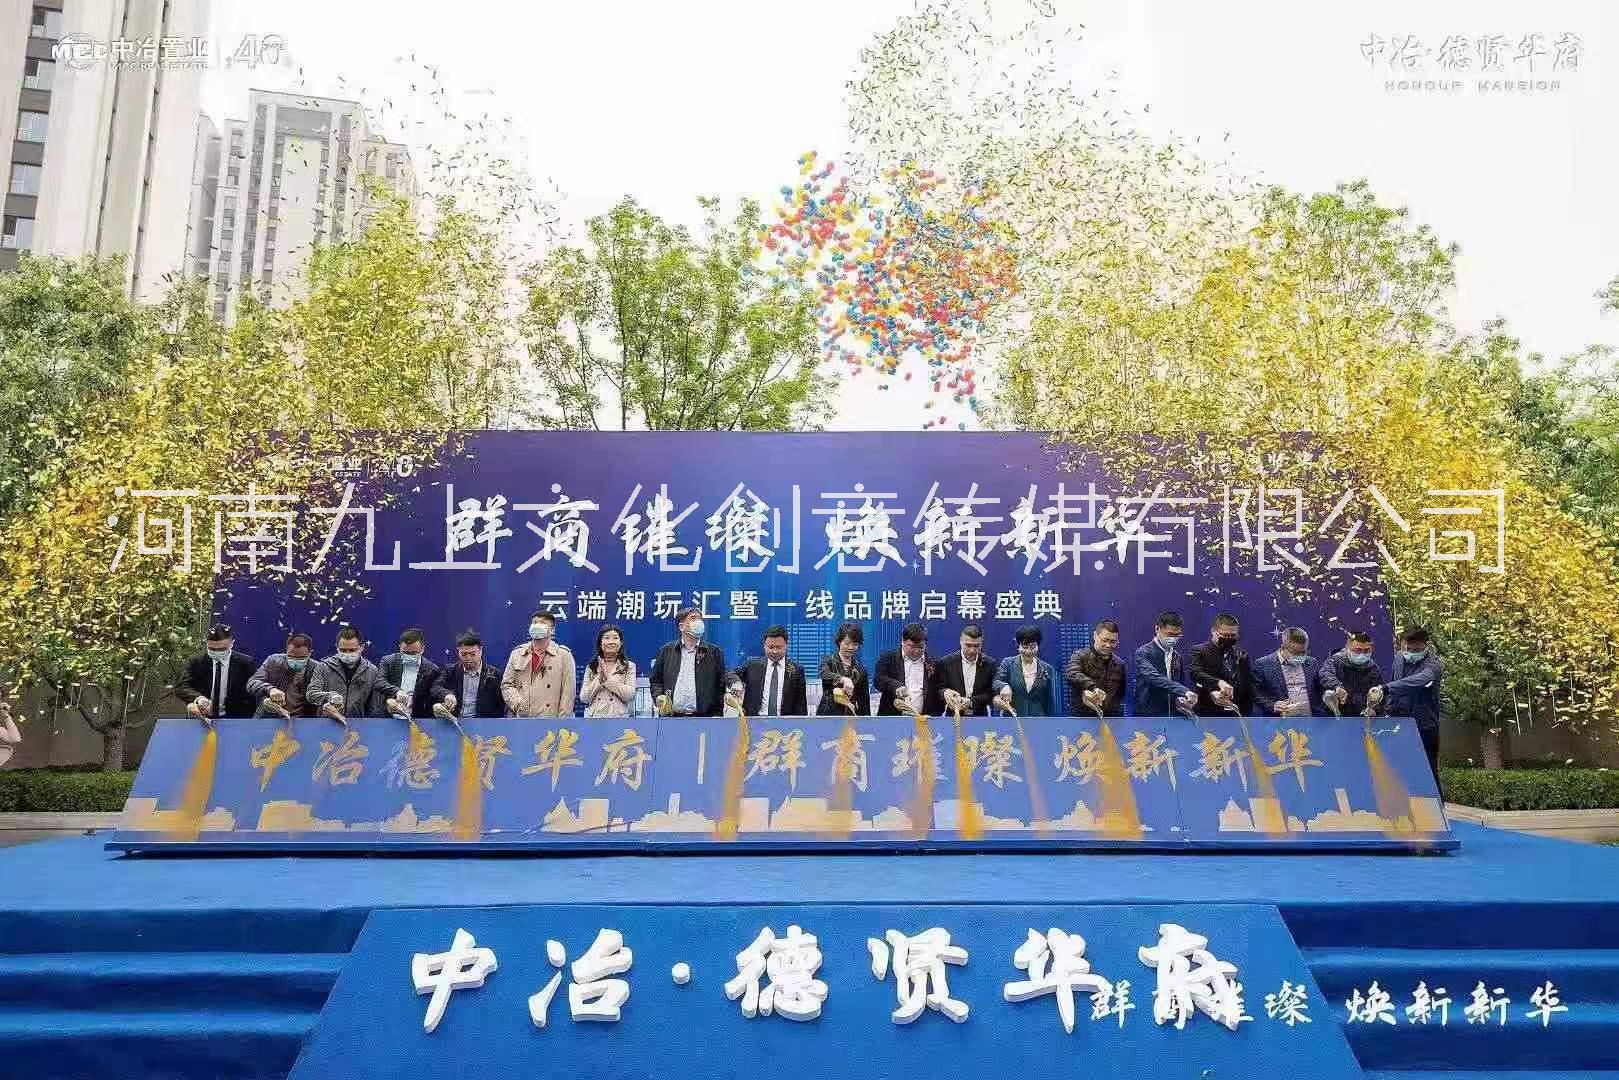 河南节日庆典会议活动启动道具卷轴推杆台 彩虹机 地爆球出租